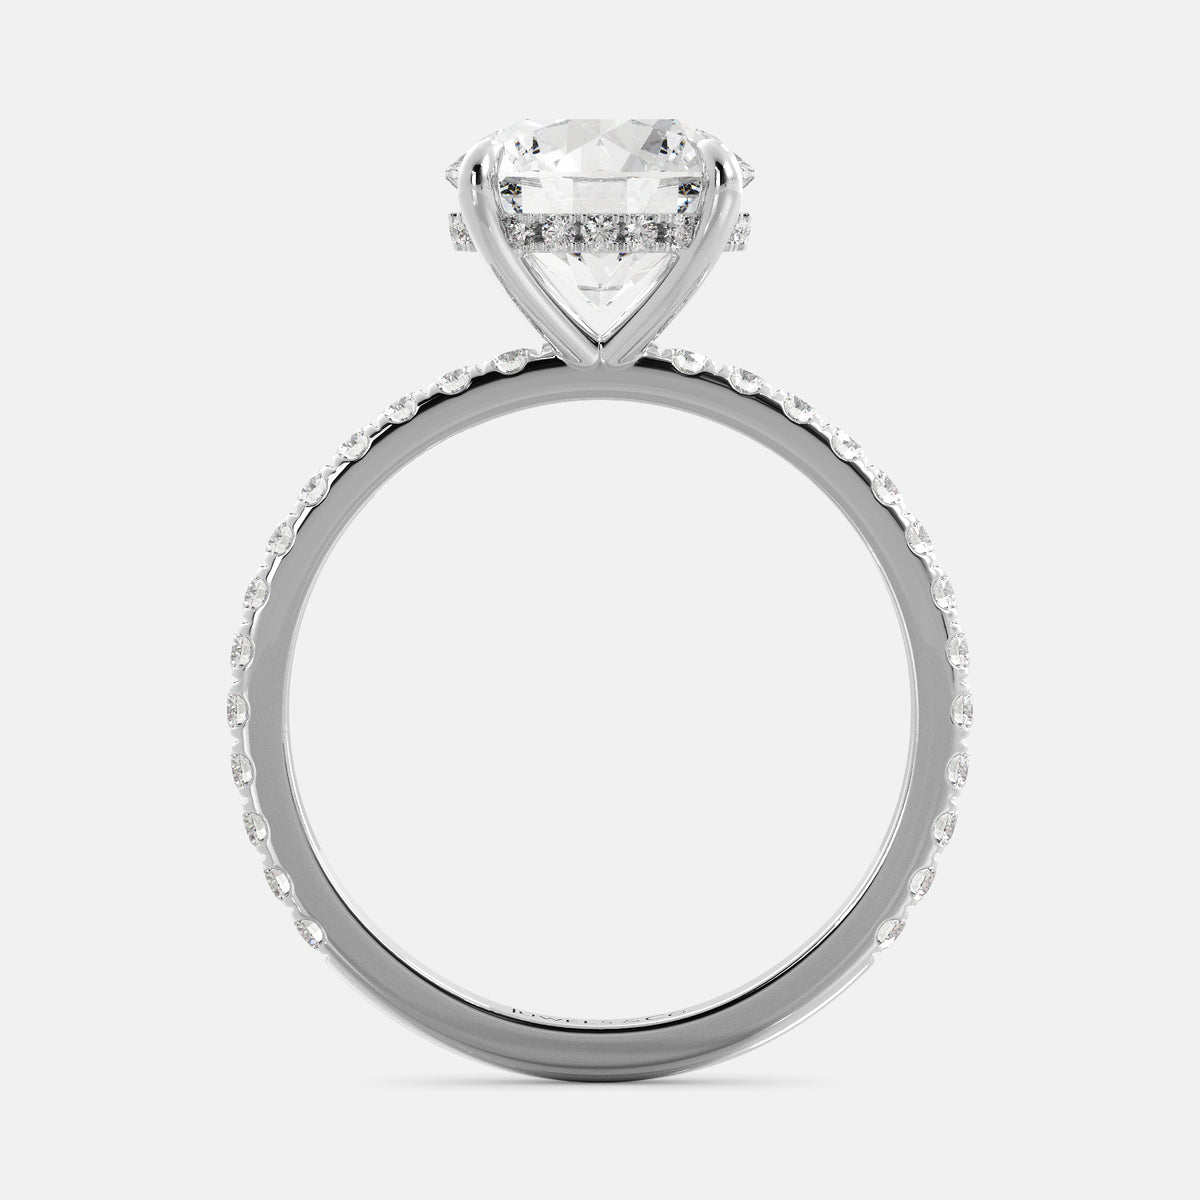 Round Solitaire Diamond Ring with Pavé